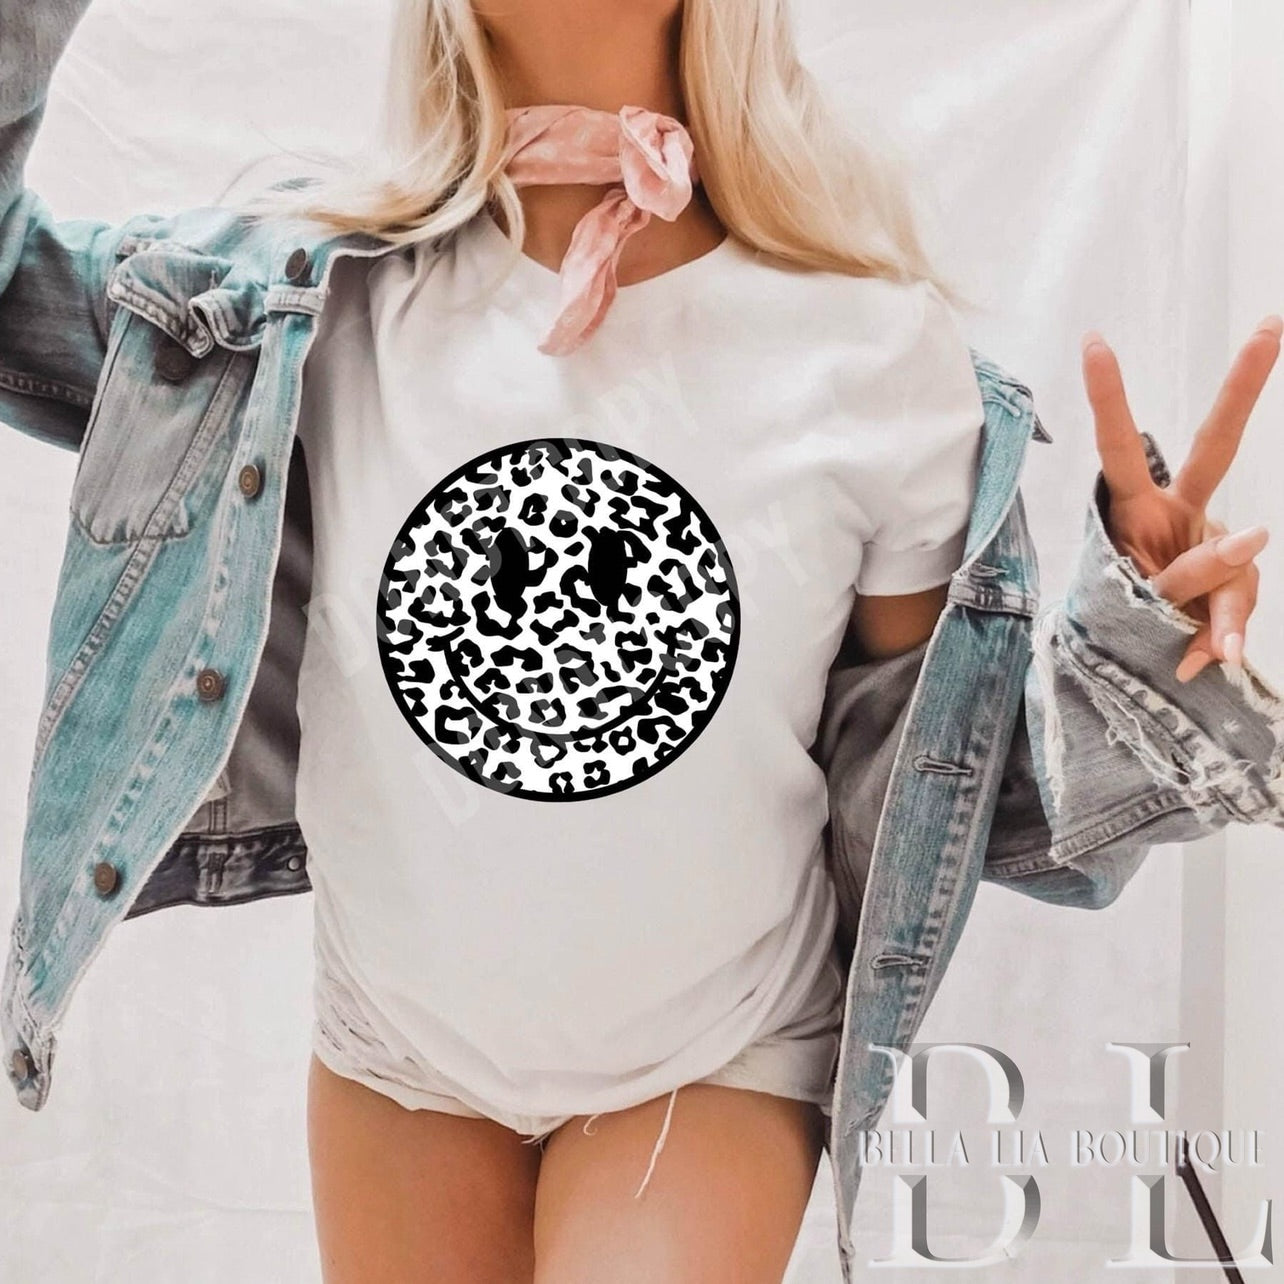 Leopard Smiley Graphic Tee or Sweatshirt - Bella Lia Boutique